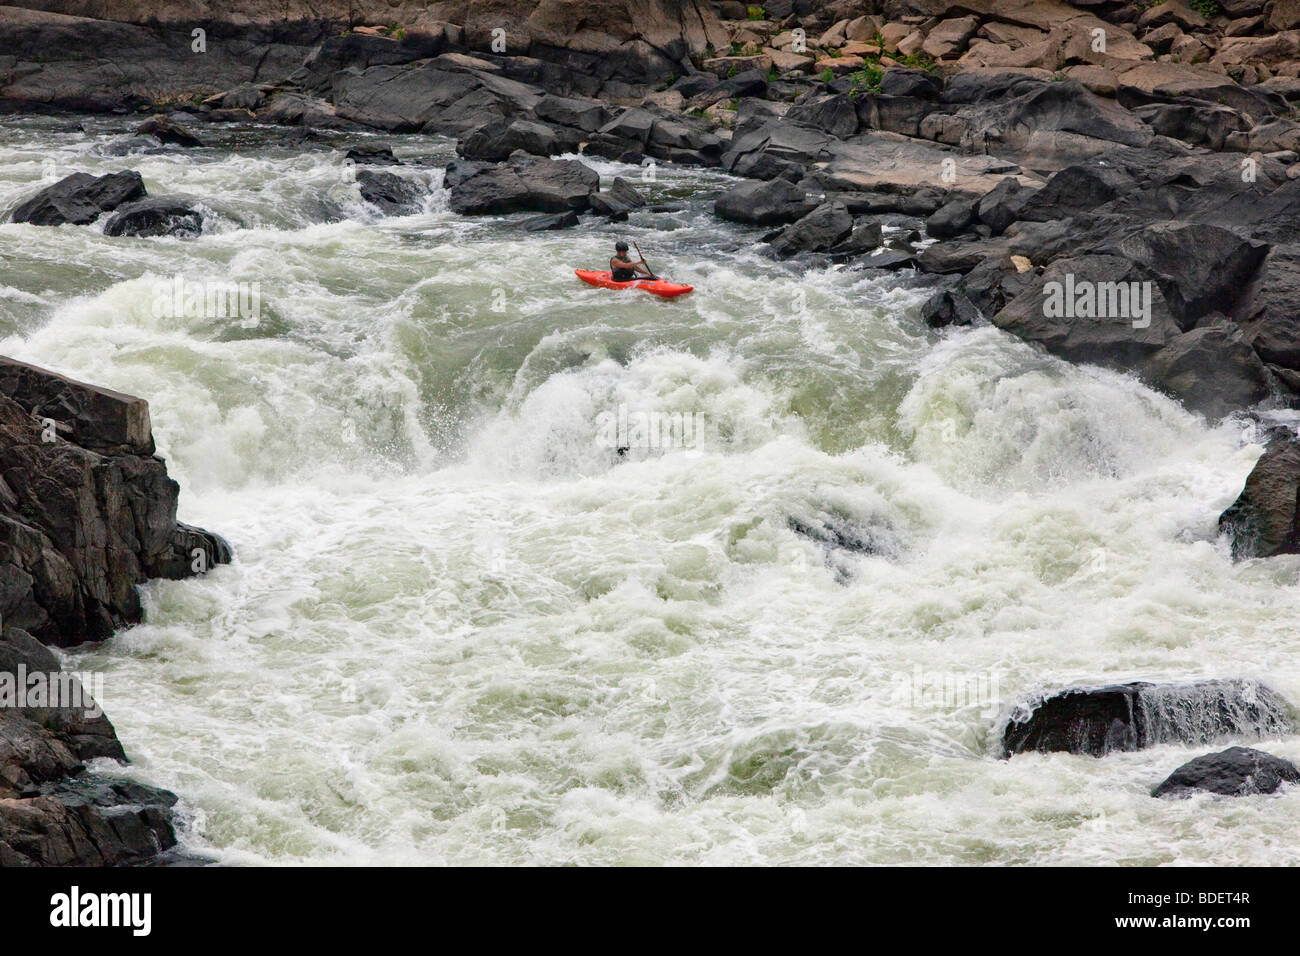 Ejecuta el Gran Salto del río Potomac. Ellos son los mayores y más rápidos de línea caída espectacular de cualquier río en EE.UU. Foto de stock